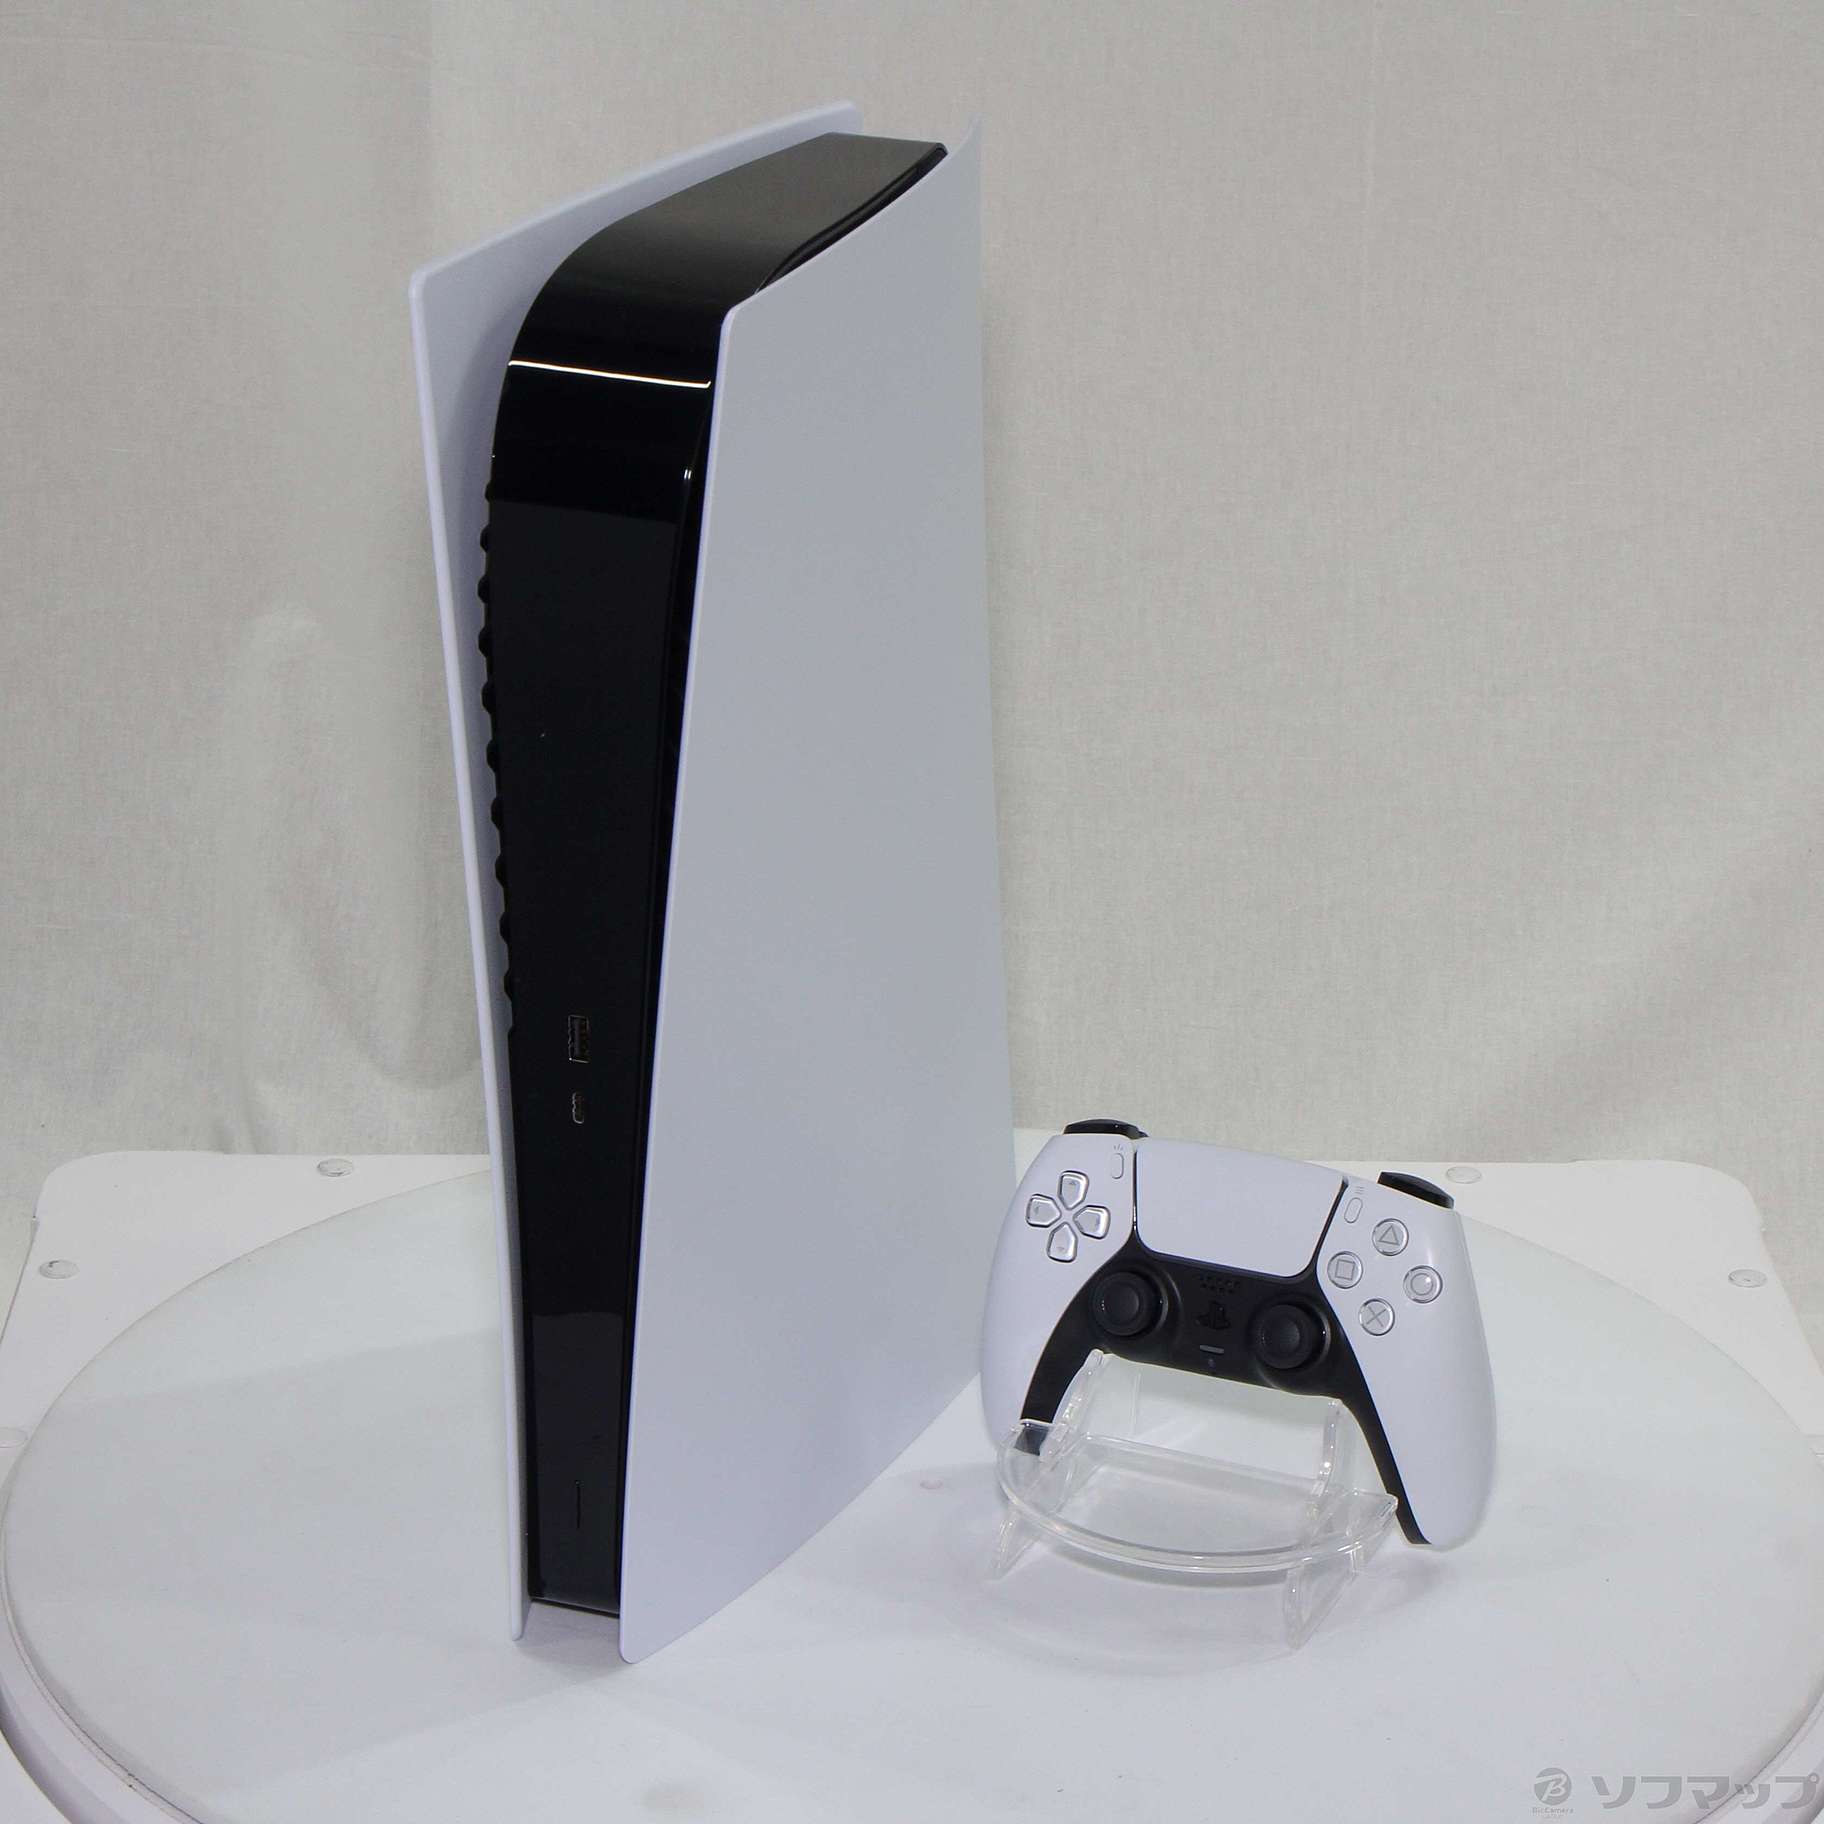 PlayStation5 デジタル・エディション  CFI-1100B01